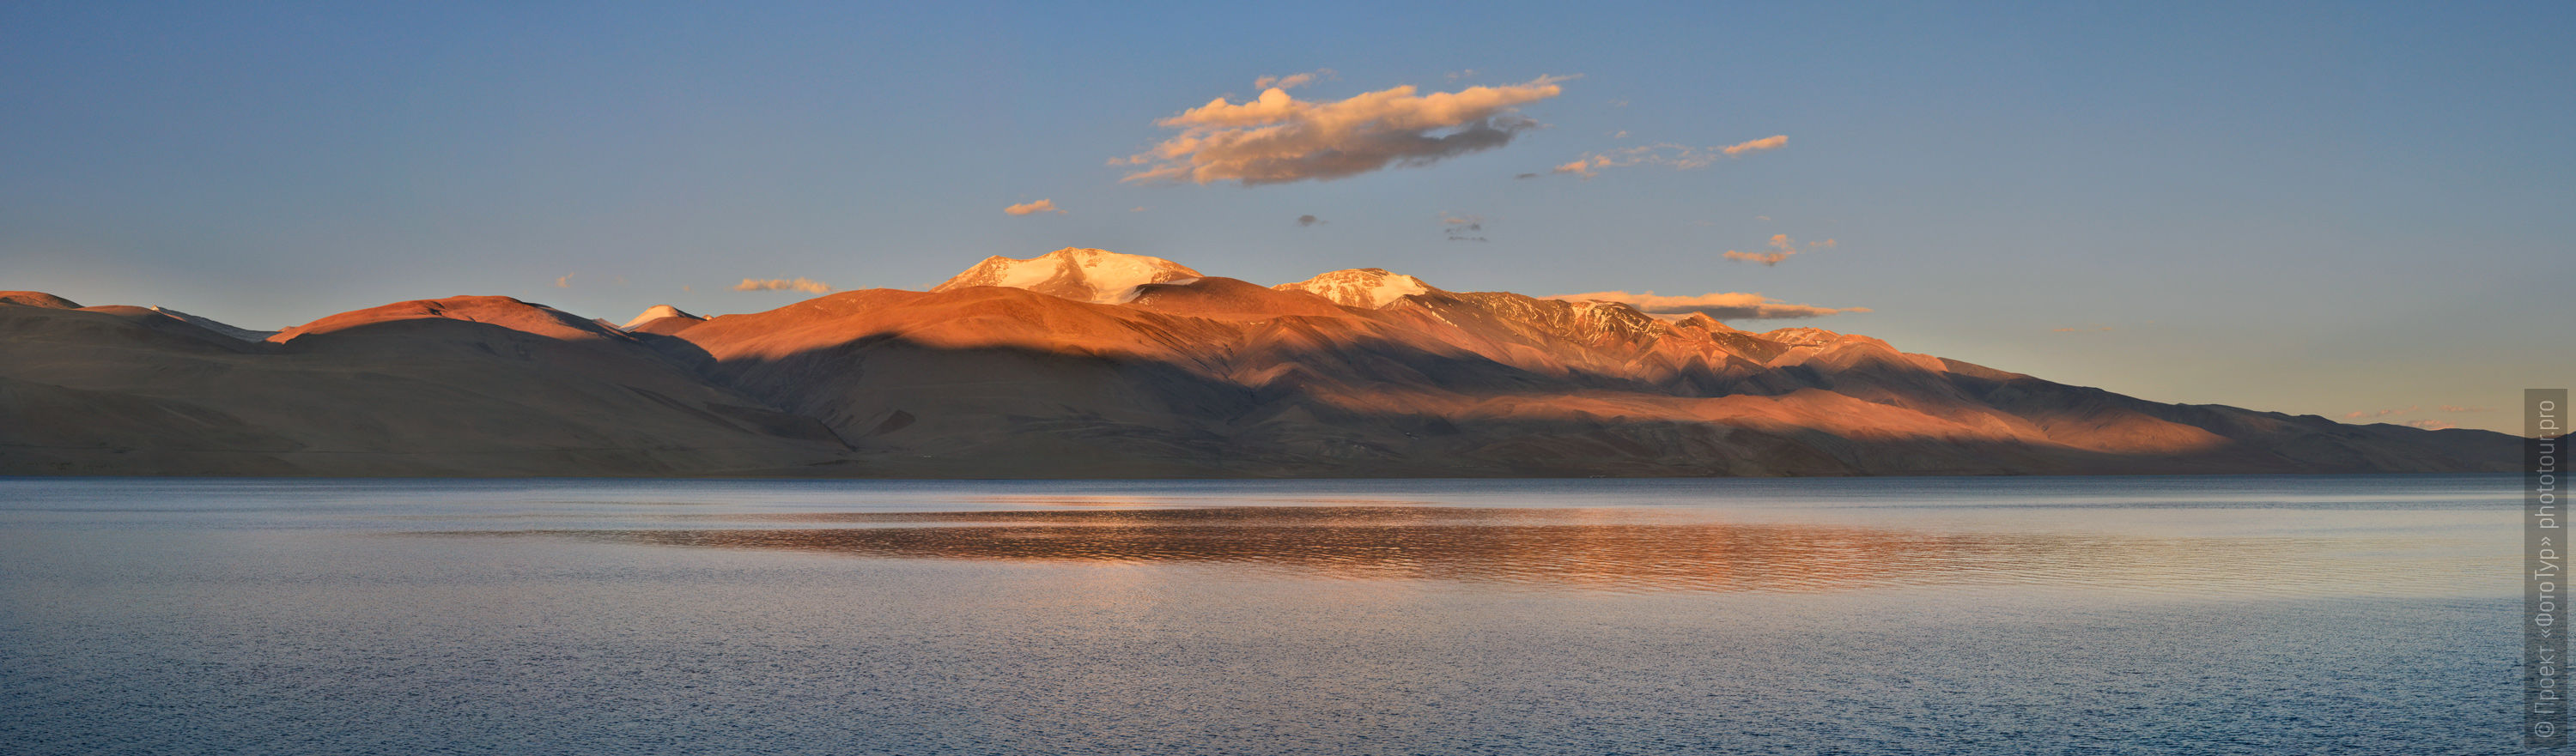 Закат на озере Цо Мирири, Ладакх, Малый Тибет, Индия.